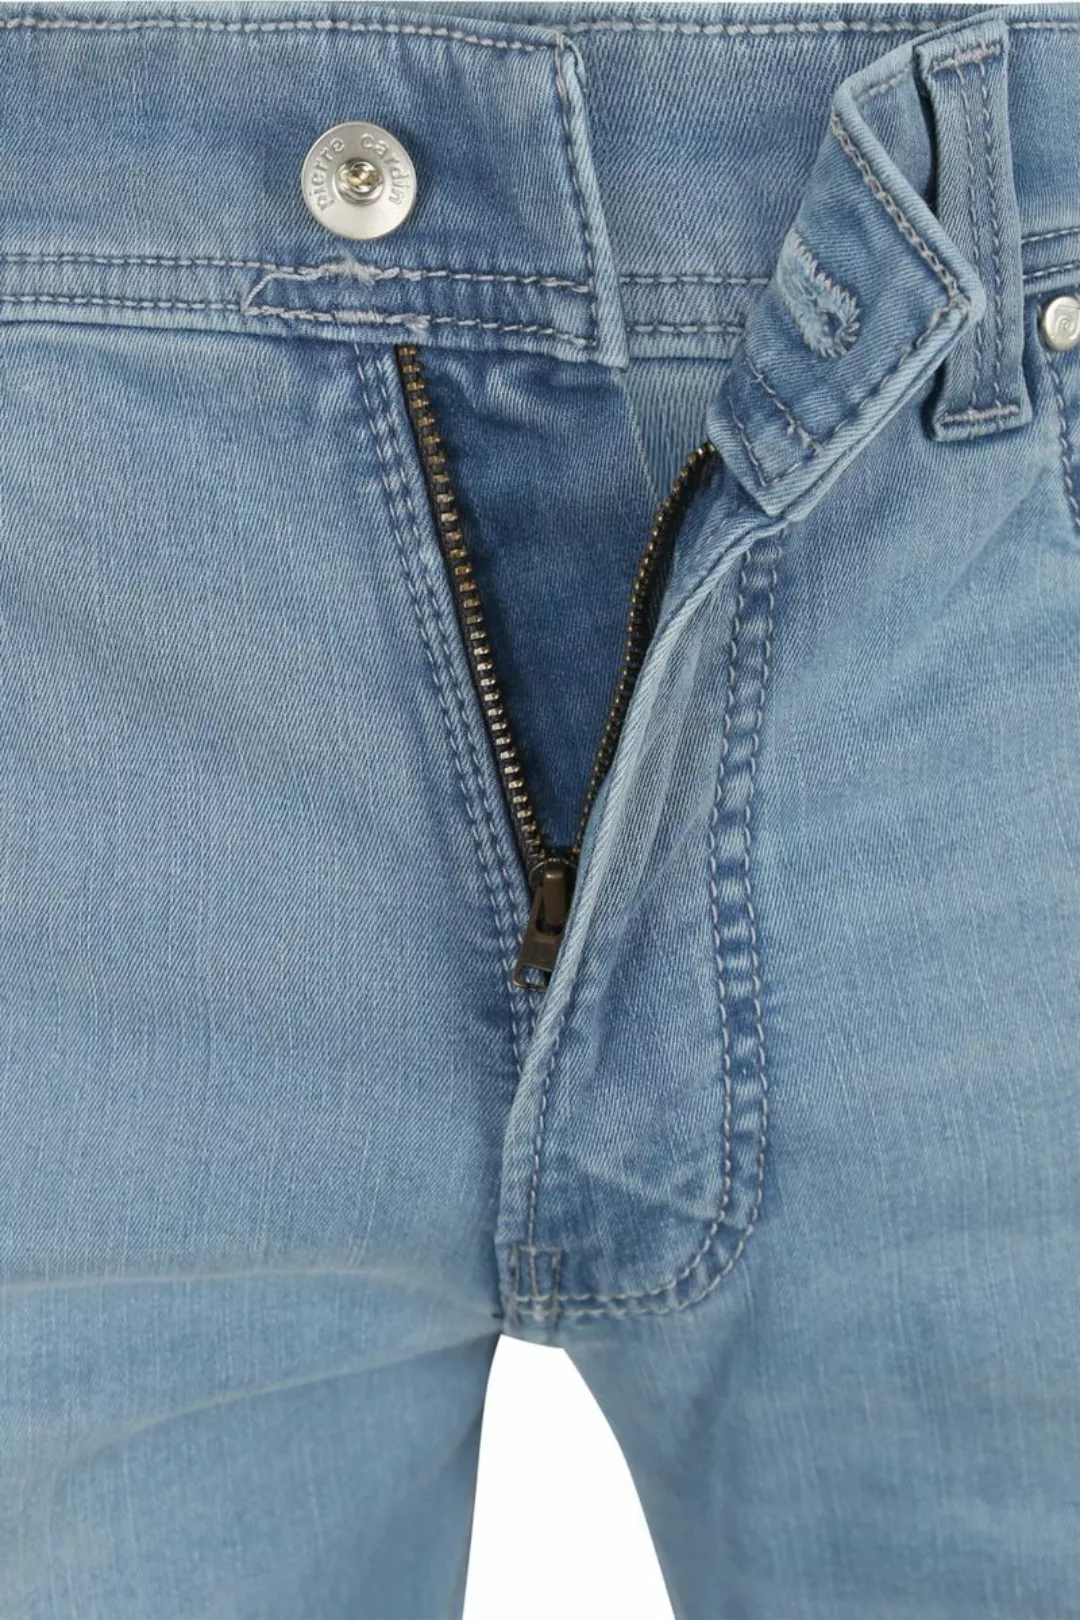 Pierre Cardin Jeans Lyon Tapered Future Flex Hellblau  - Größe W 35 - L 32 günstig online kaufen